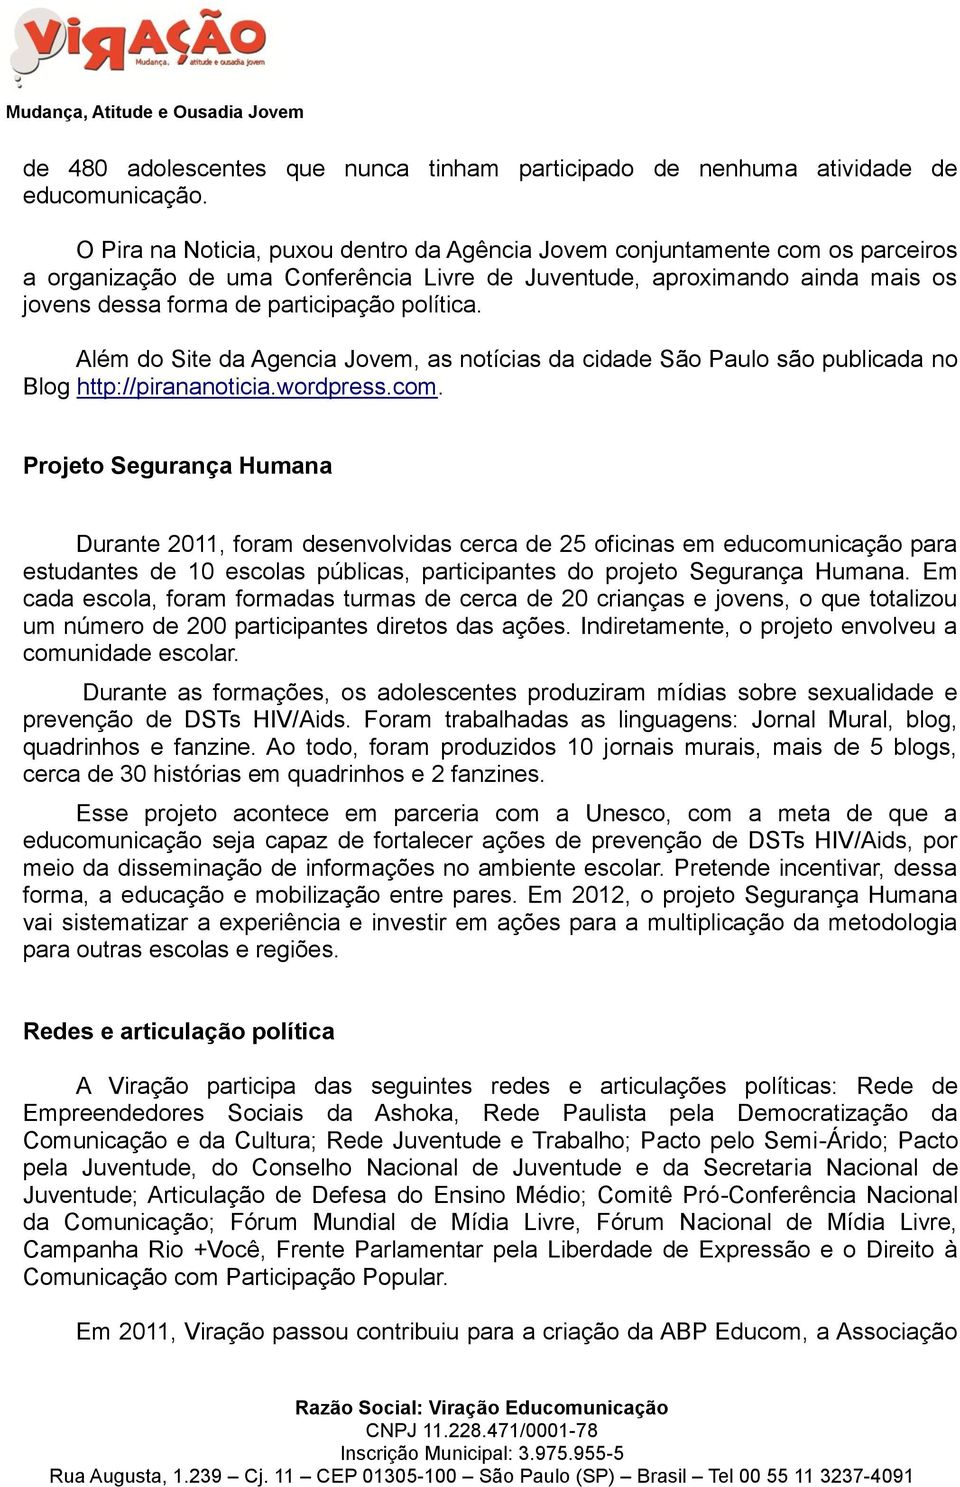 política. Além do Site da Agencia Jovem, as notícias da cidade São Paulo são publicada no Blog http://pirananoticia.wordpress.com.